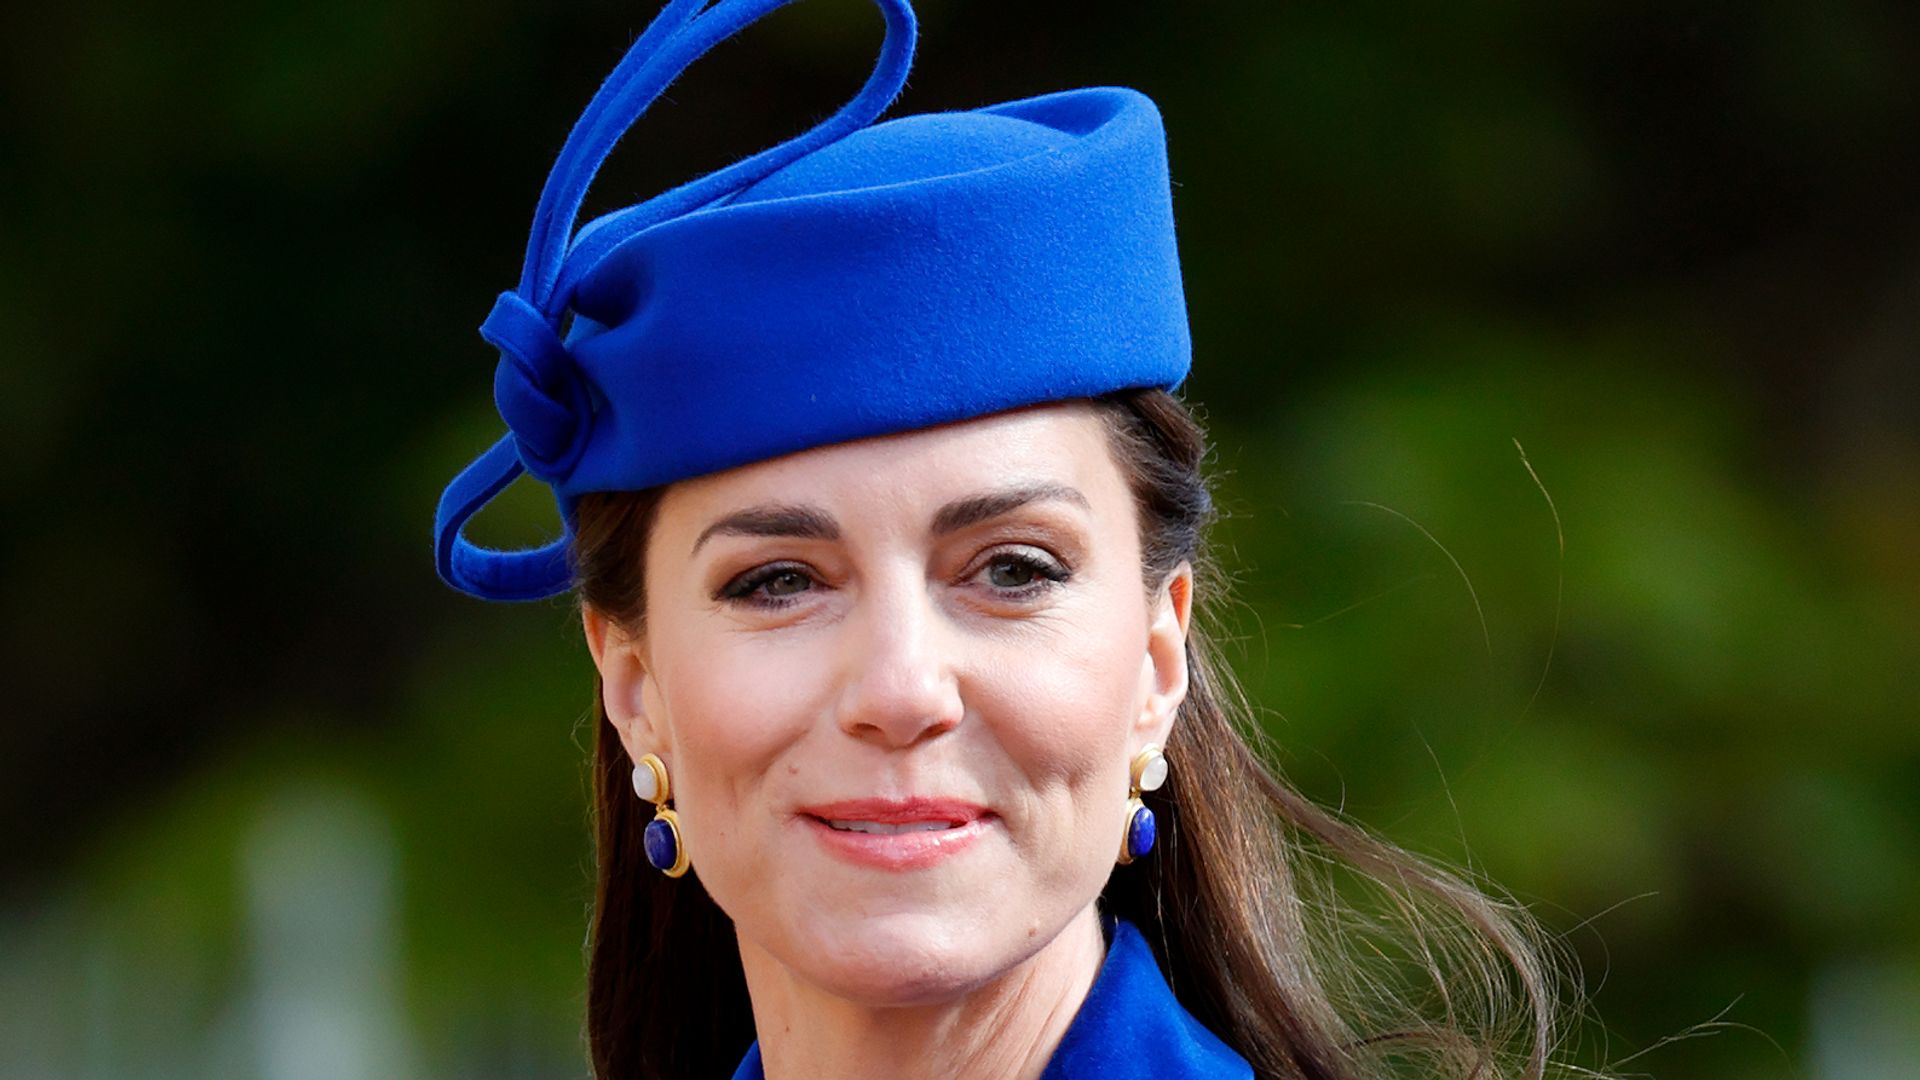 Kate Middleton wearing blue catherine walker coat dress at Easter Mattins Service 